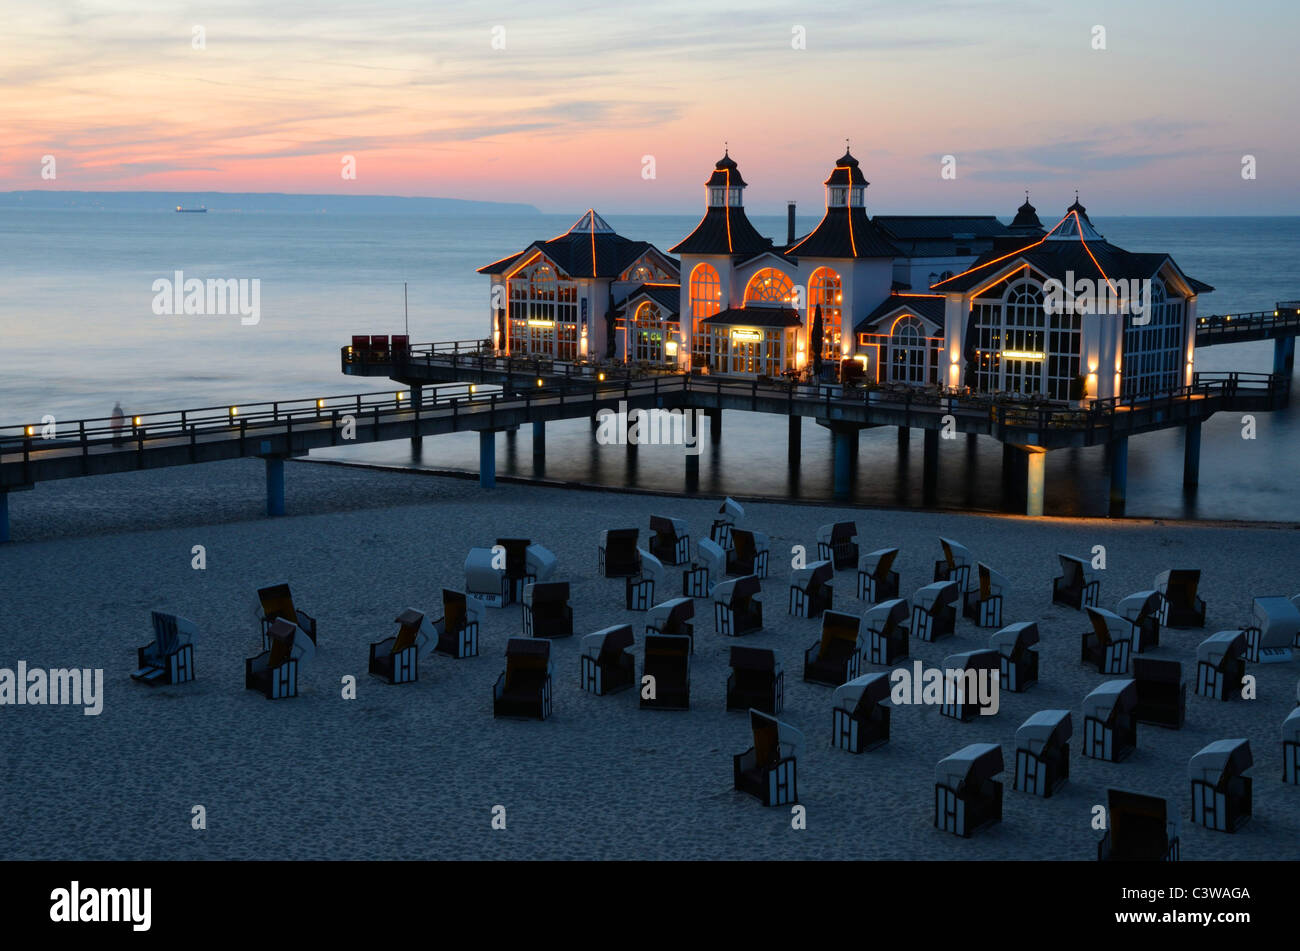 Il Molo di Sellin sull isola tedesca di Rügen, costa baltica, di notte Foto Stock